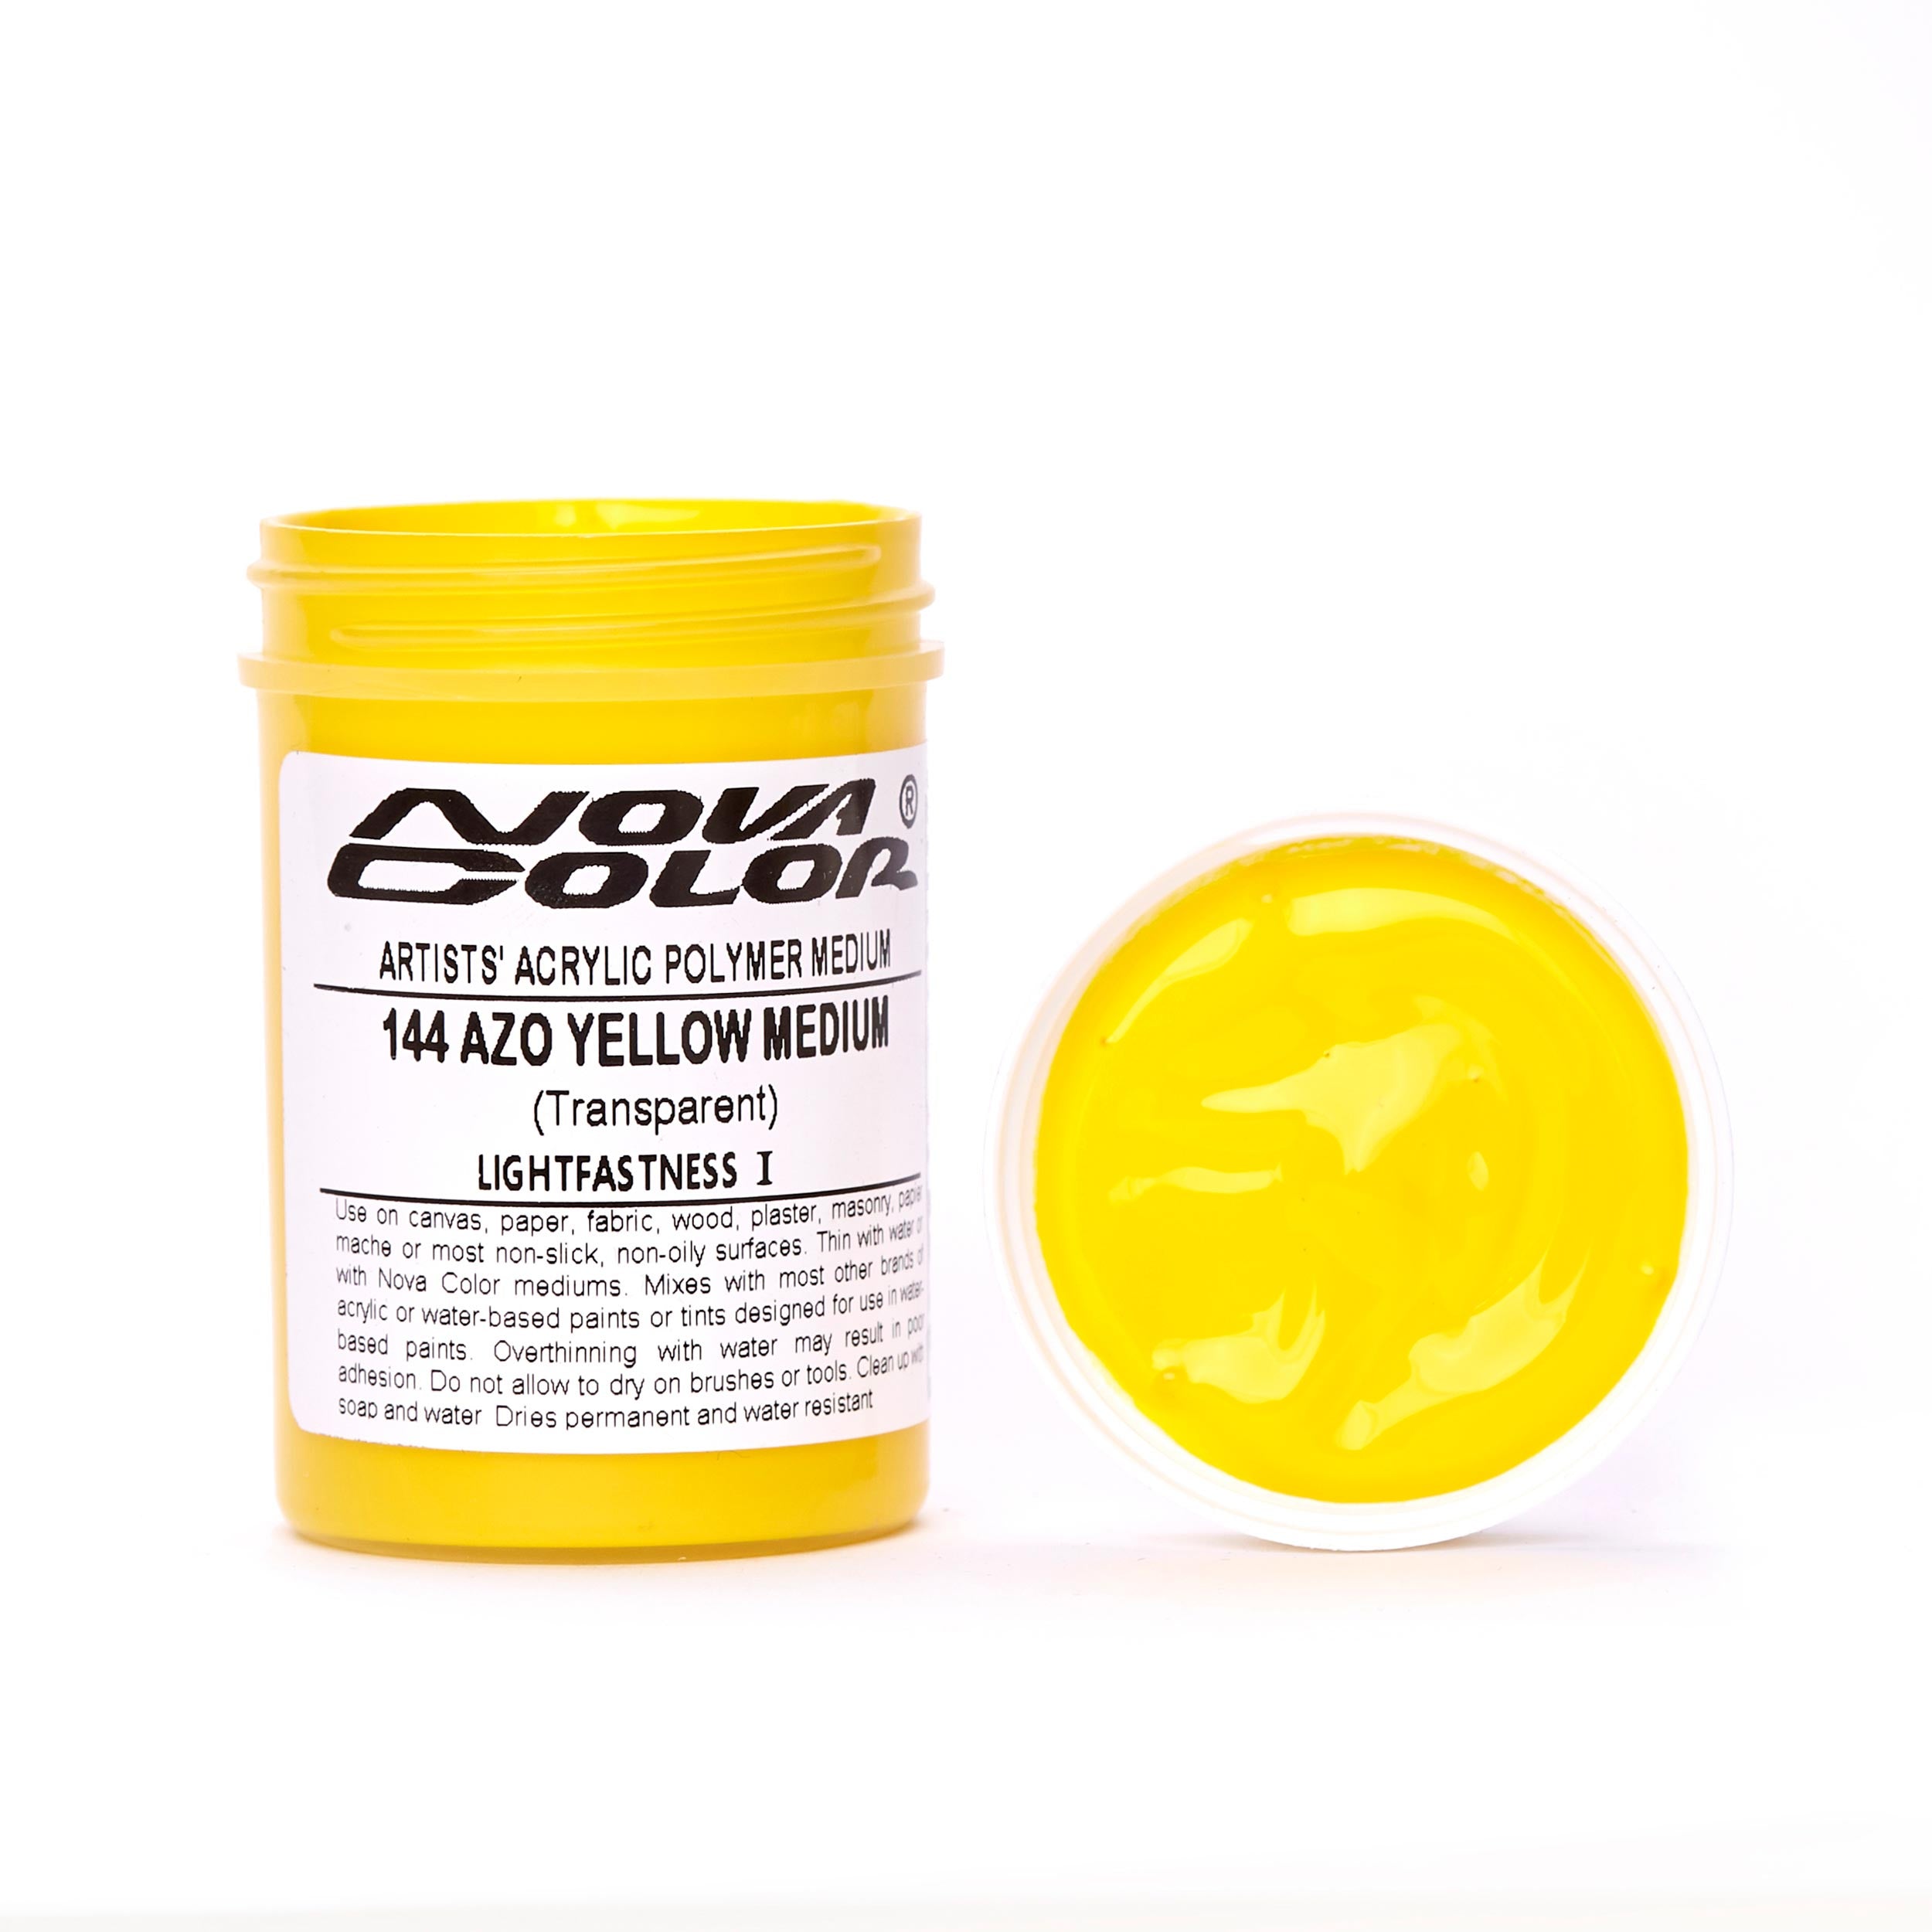 FUN Yellow Oxide Soap Colorant (1 oz.)